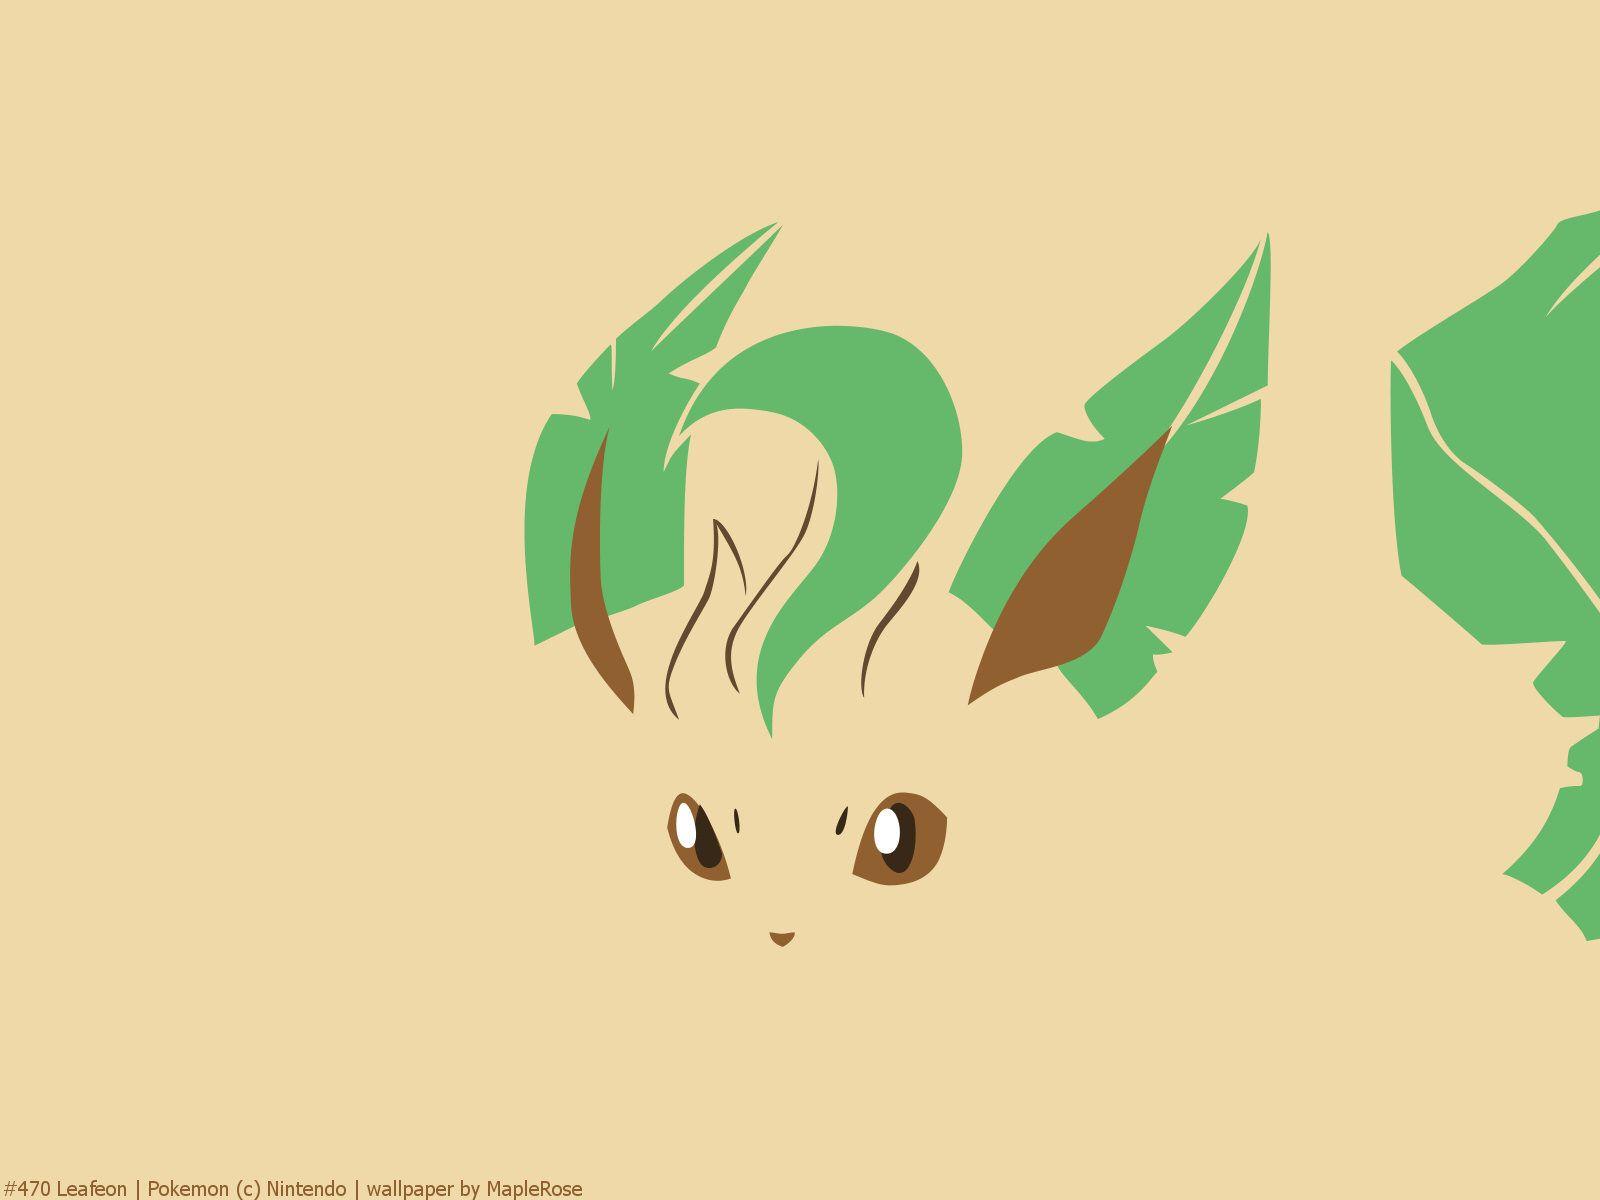 Leafeon. Pokémon, Pokemon stuff and Grass type